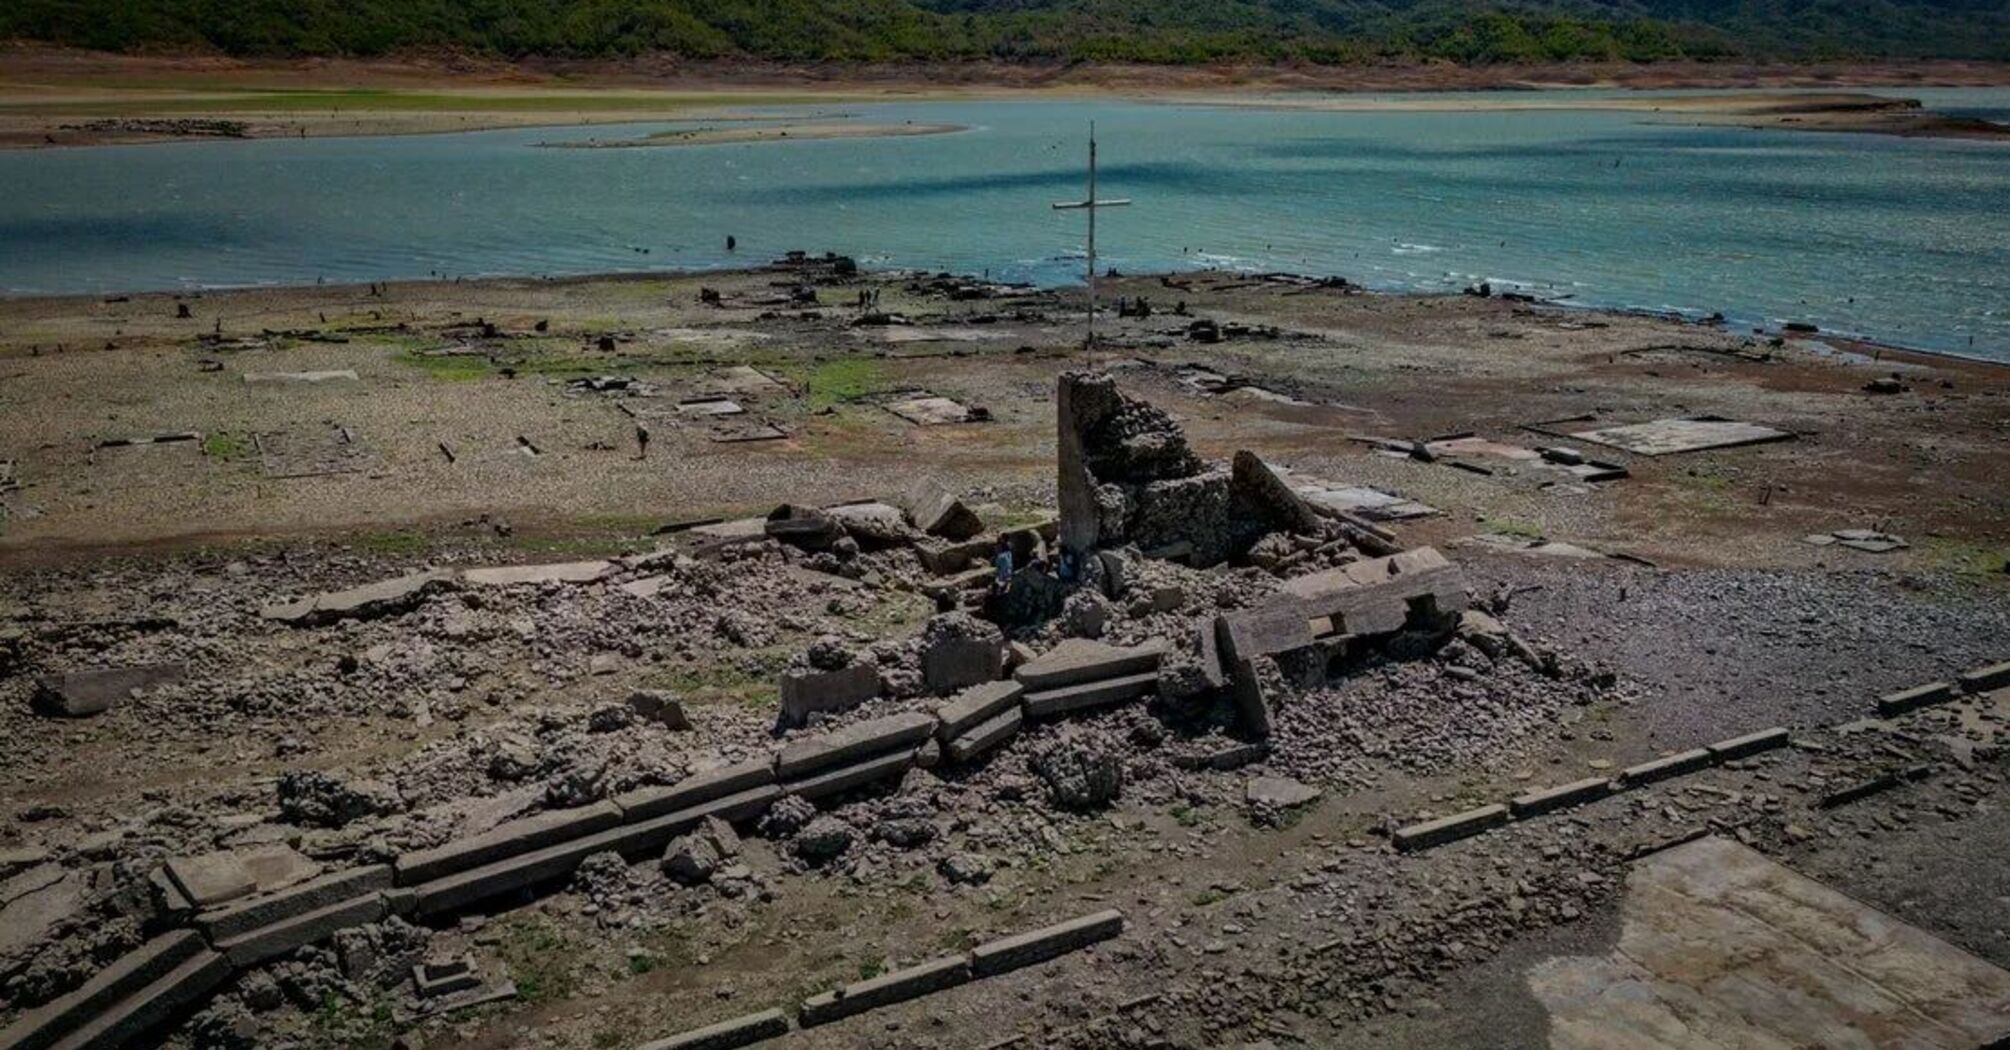 Посуха допомогла: на Філіппінах знайшли руїни стародавнього затопленого міста Пантабанган (фото)